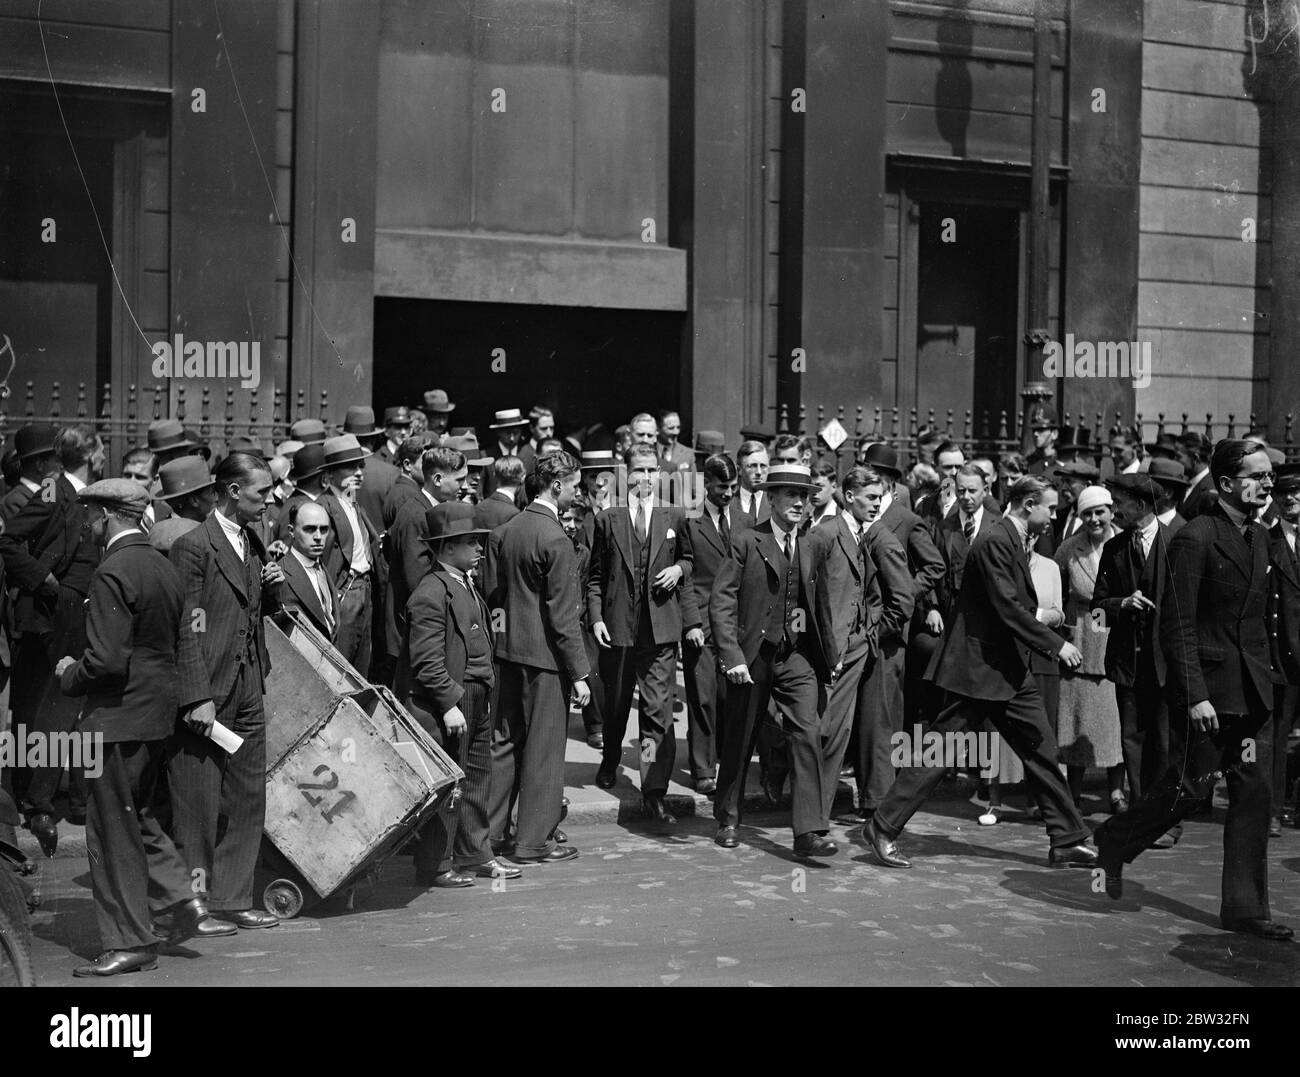 ' Nessuna modifica' del tasso bancario. Nonostante le speranze ottimistiche nella città che il tasso bancario sarebbe stato ridotto all'1 1/2 per cento , non vi è stato alcun cambiamento fatto durante la riunione settimanale presso la Banca d'Inghilterra . Messaggeri che corrono dalla Banca d'Inghilterra per portare la notizia che non c'era alcun cambiamento nel tasso bancario . 14 luglio 1932 Foto Stock